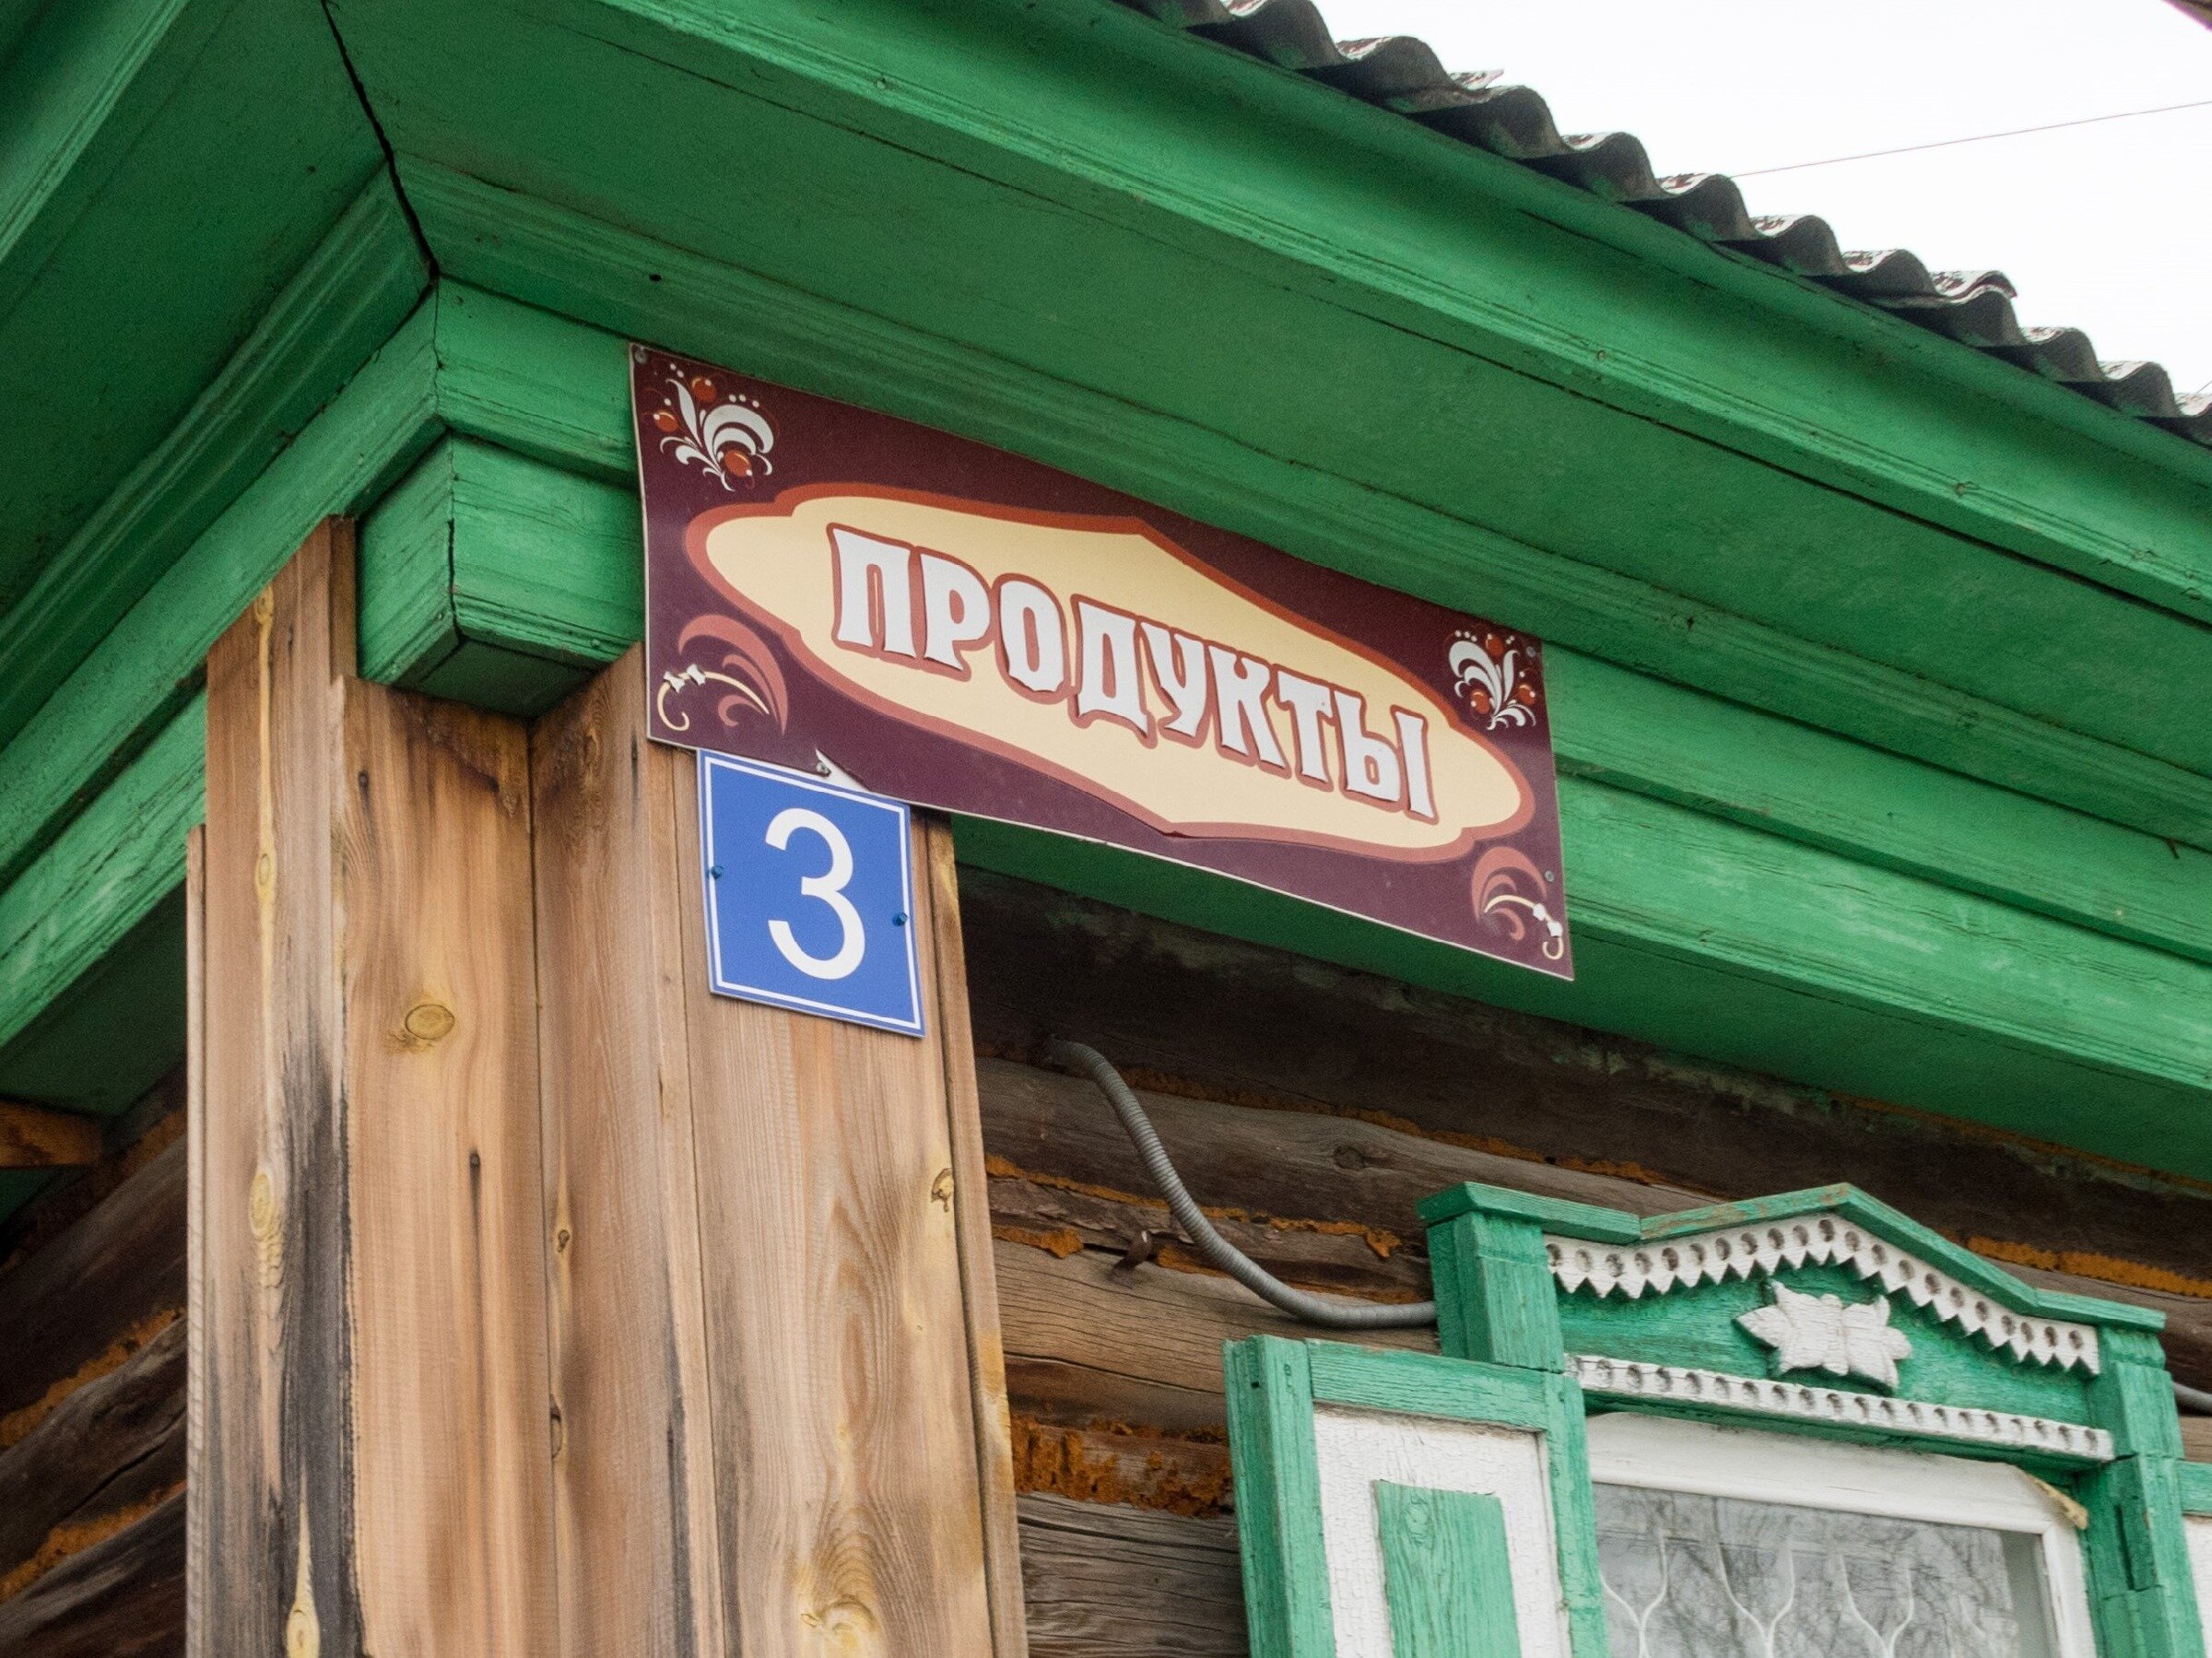 Как выглядит сельский магазин в глухой деревне, и что здесь можно купить? Мордвиновка. Челябинская область